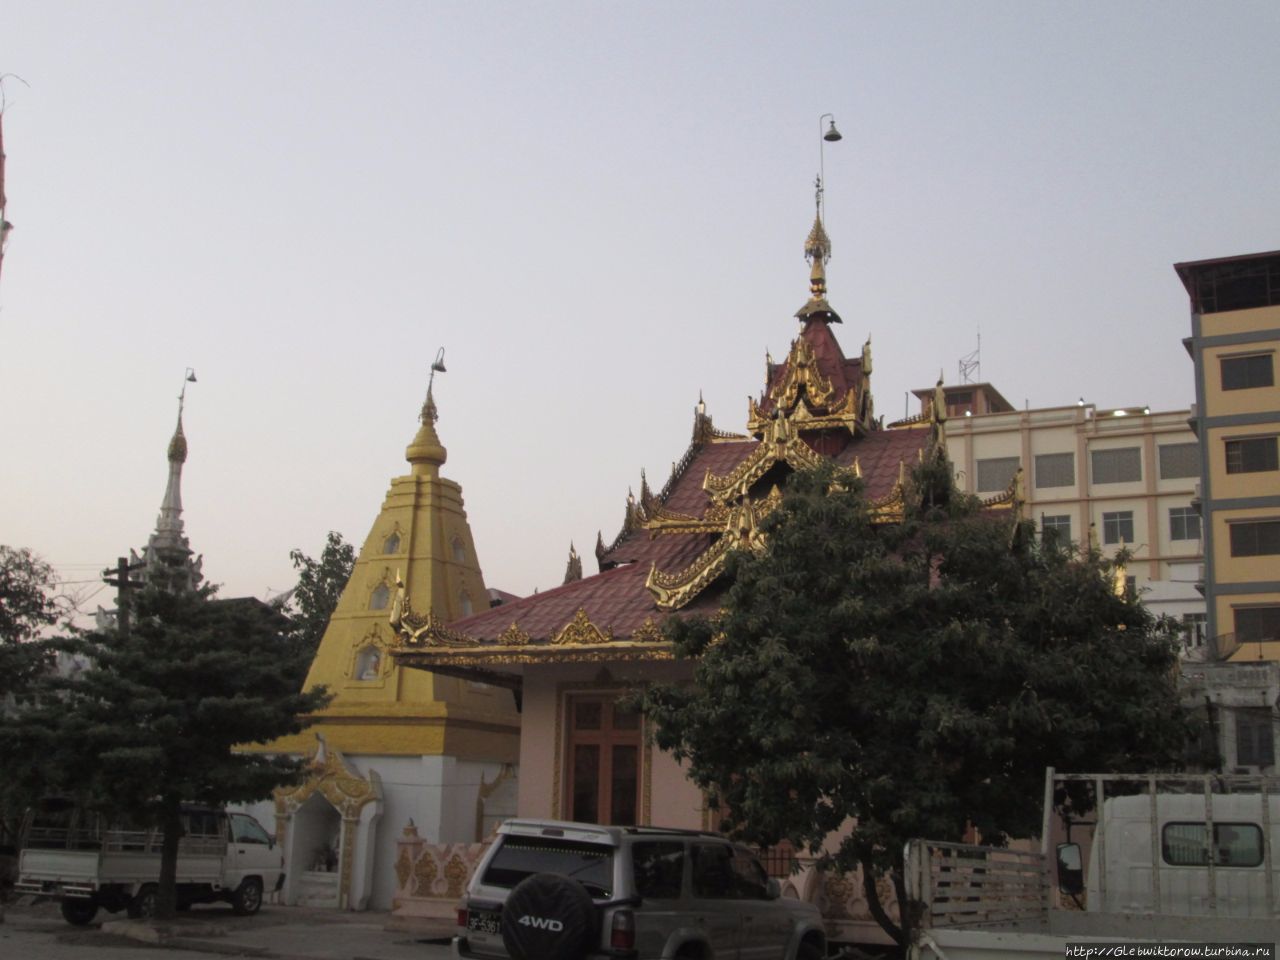 Осмотр достопримечательностей Мандалая утром и вечером Мандалай, Мьянма